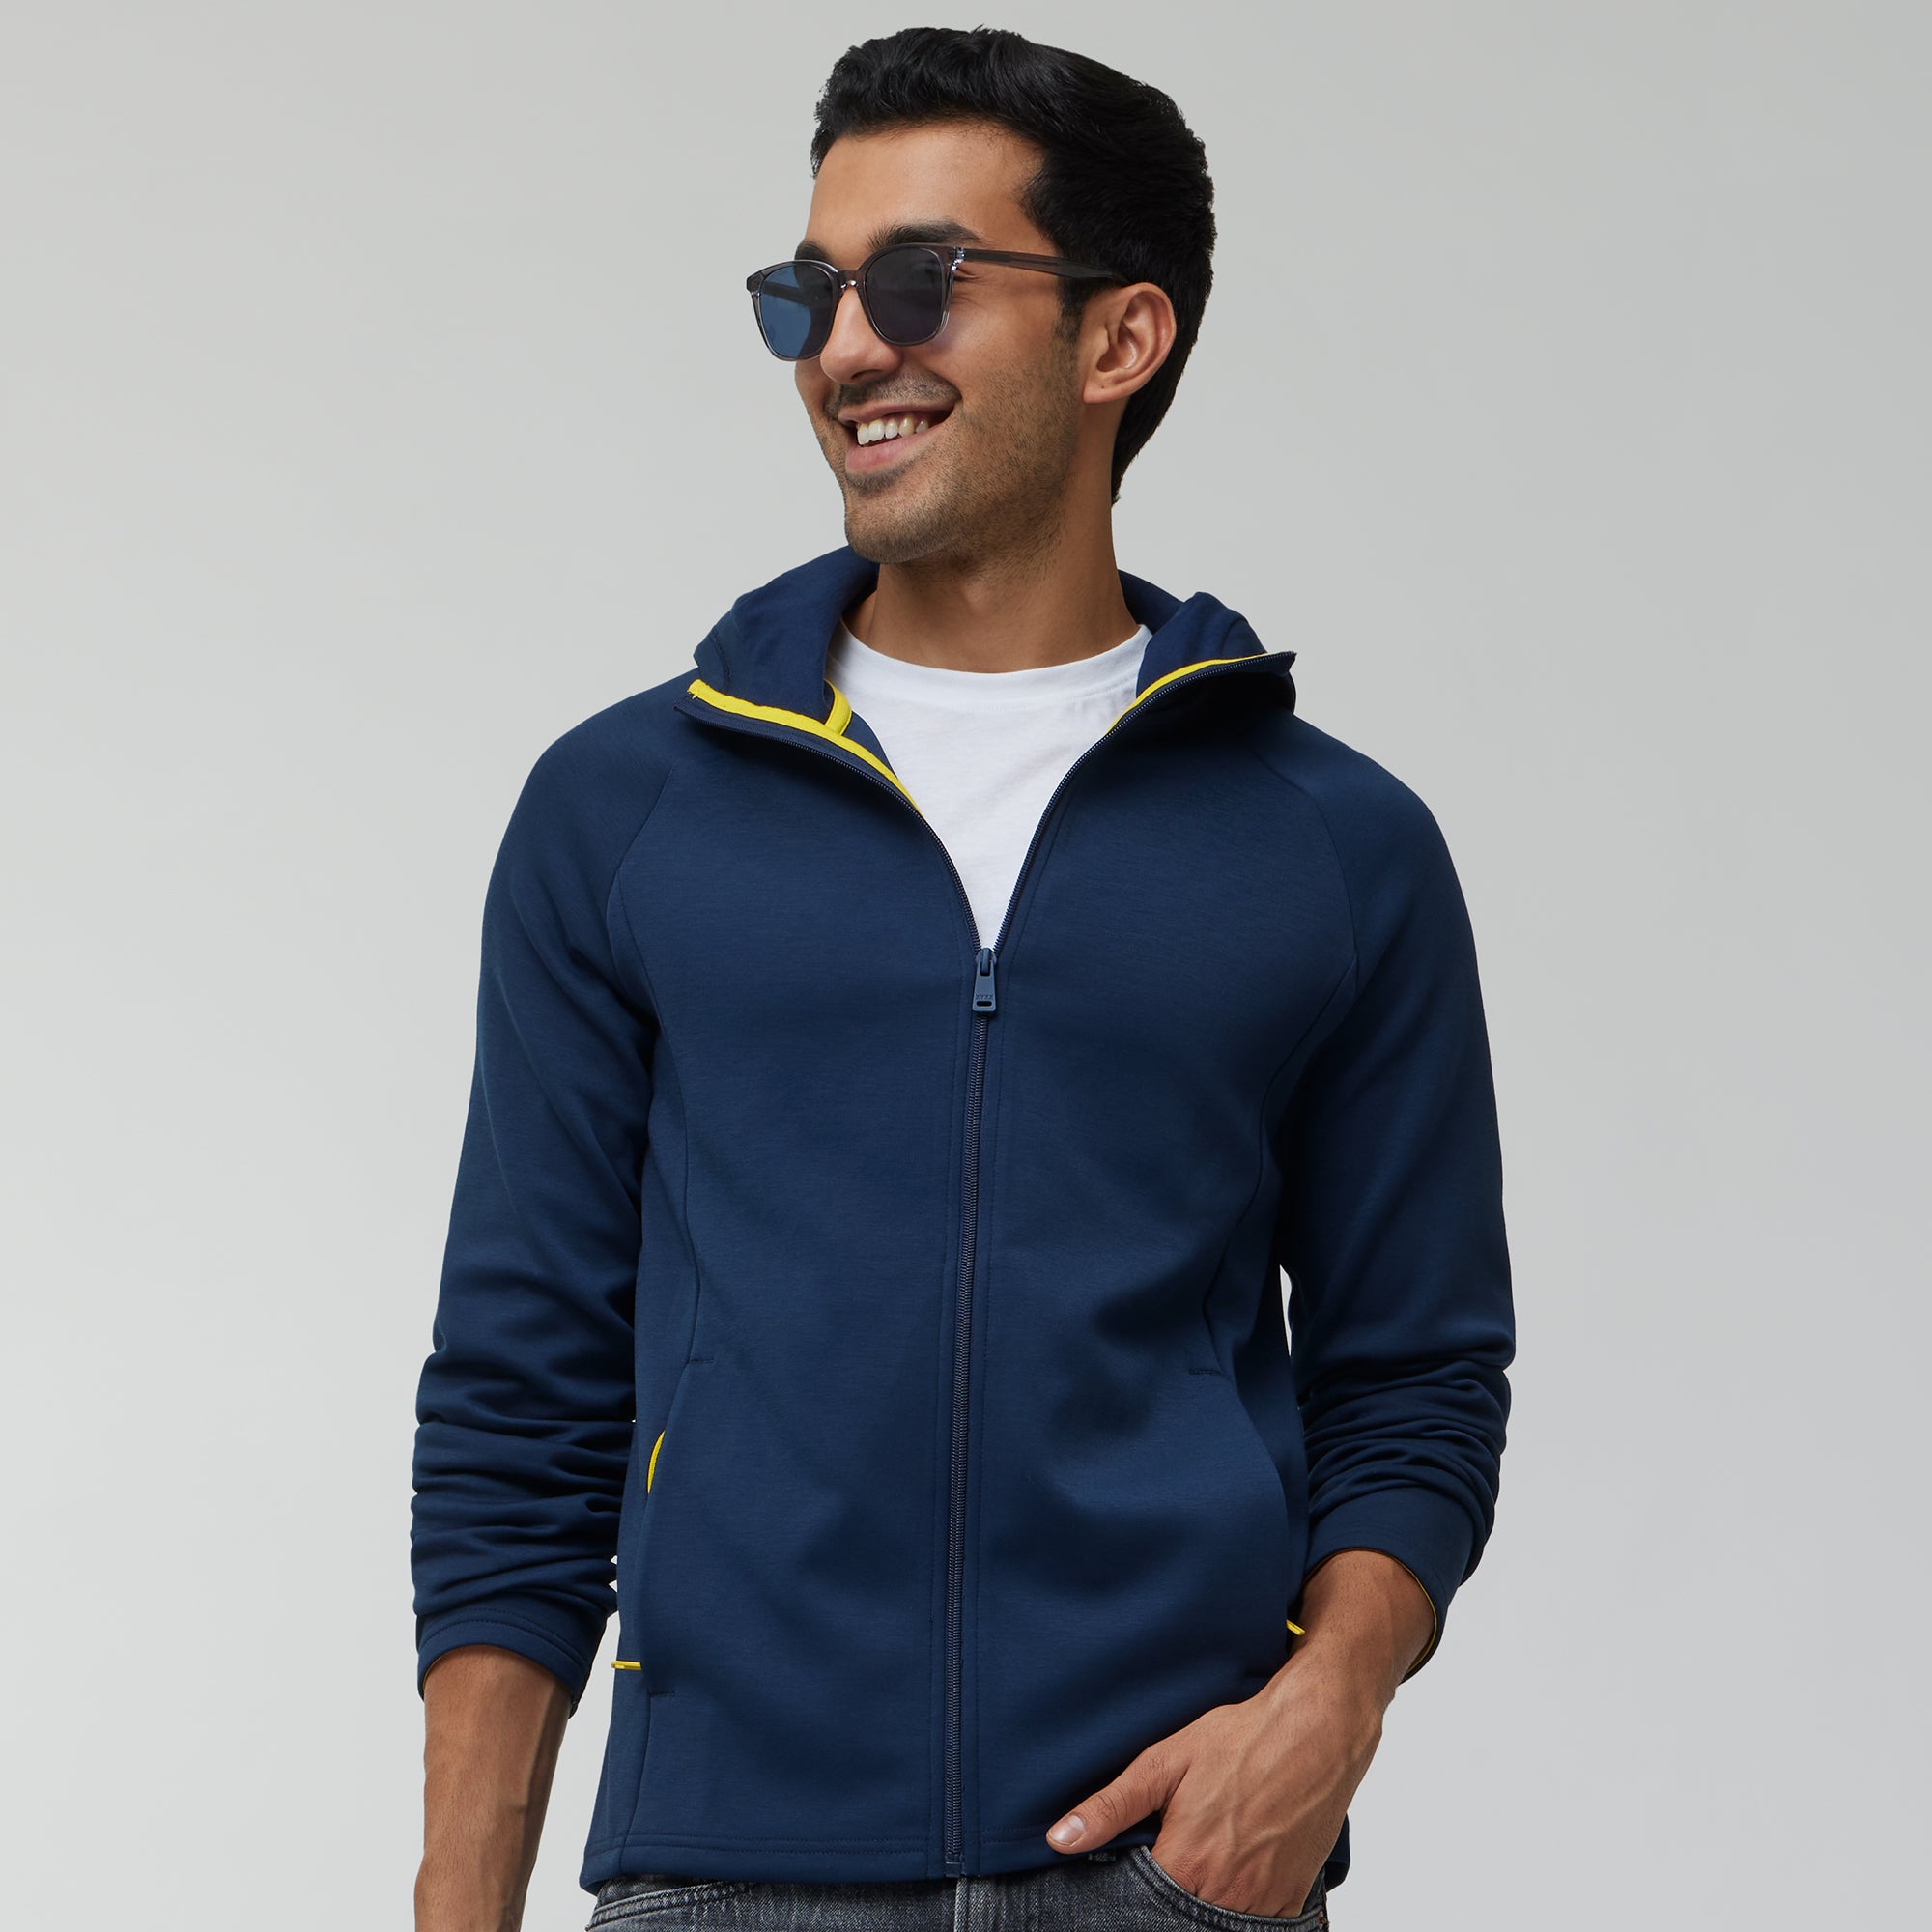 Men Zipper Jackets - Buy Men Zipper Jackets online in India